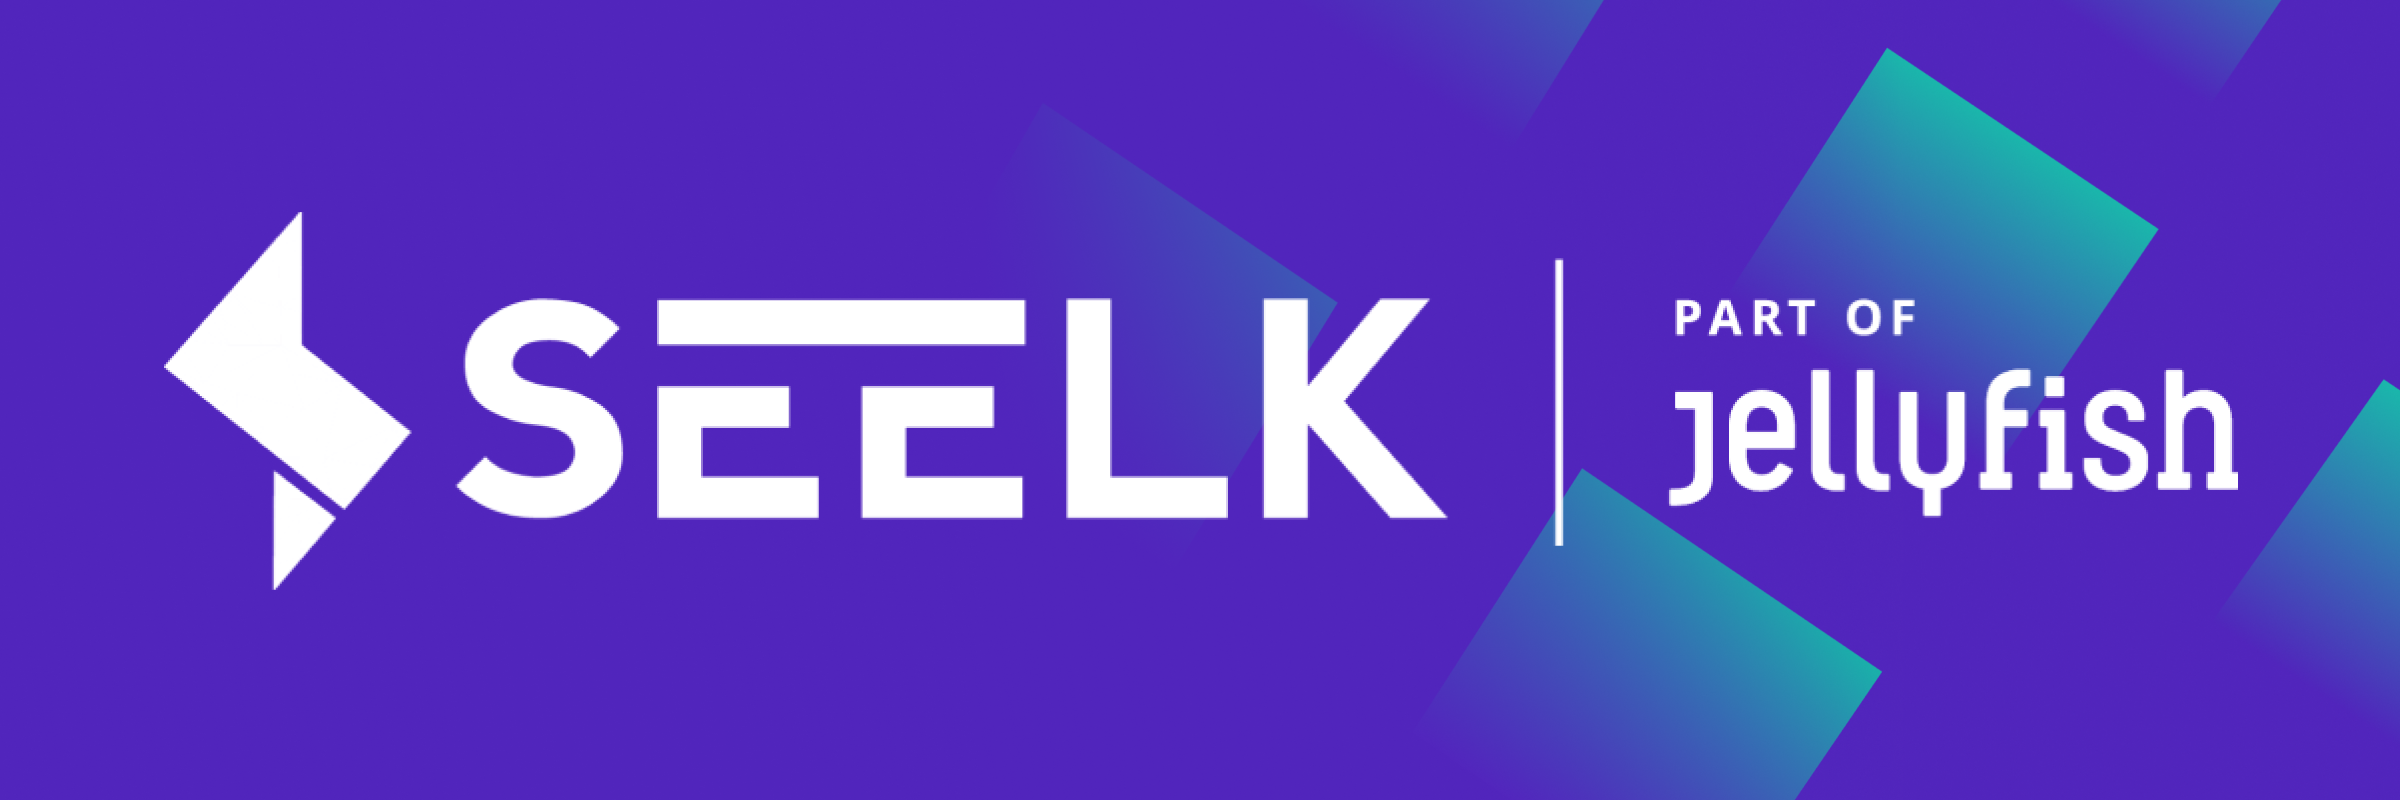 Jellyfish se fortalece en Amazon al adquirir Seelk para ser un partner mundial en comercio electrónico